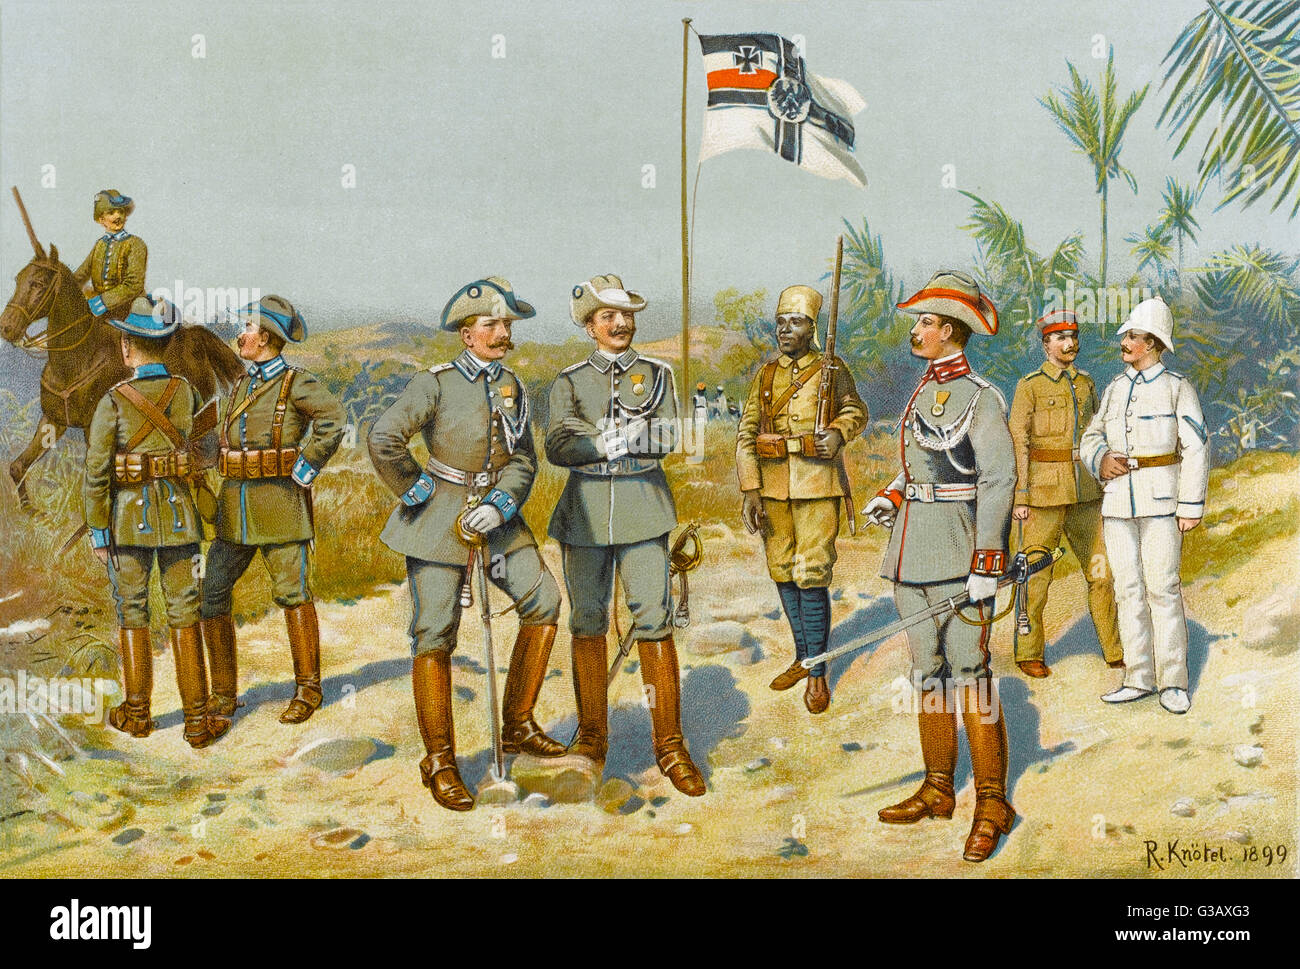 Uniformi di 'Schutztruppen in Afrika' - sulla sinistra, south-west Africa : centro, East Africa : Destra, Camerun e Togo. L'unico soldato nativo è Sudanese. Data: 1899 Foto Stock